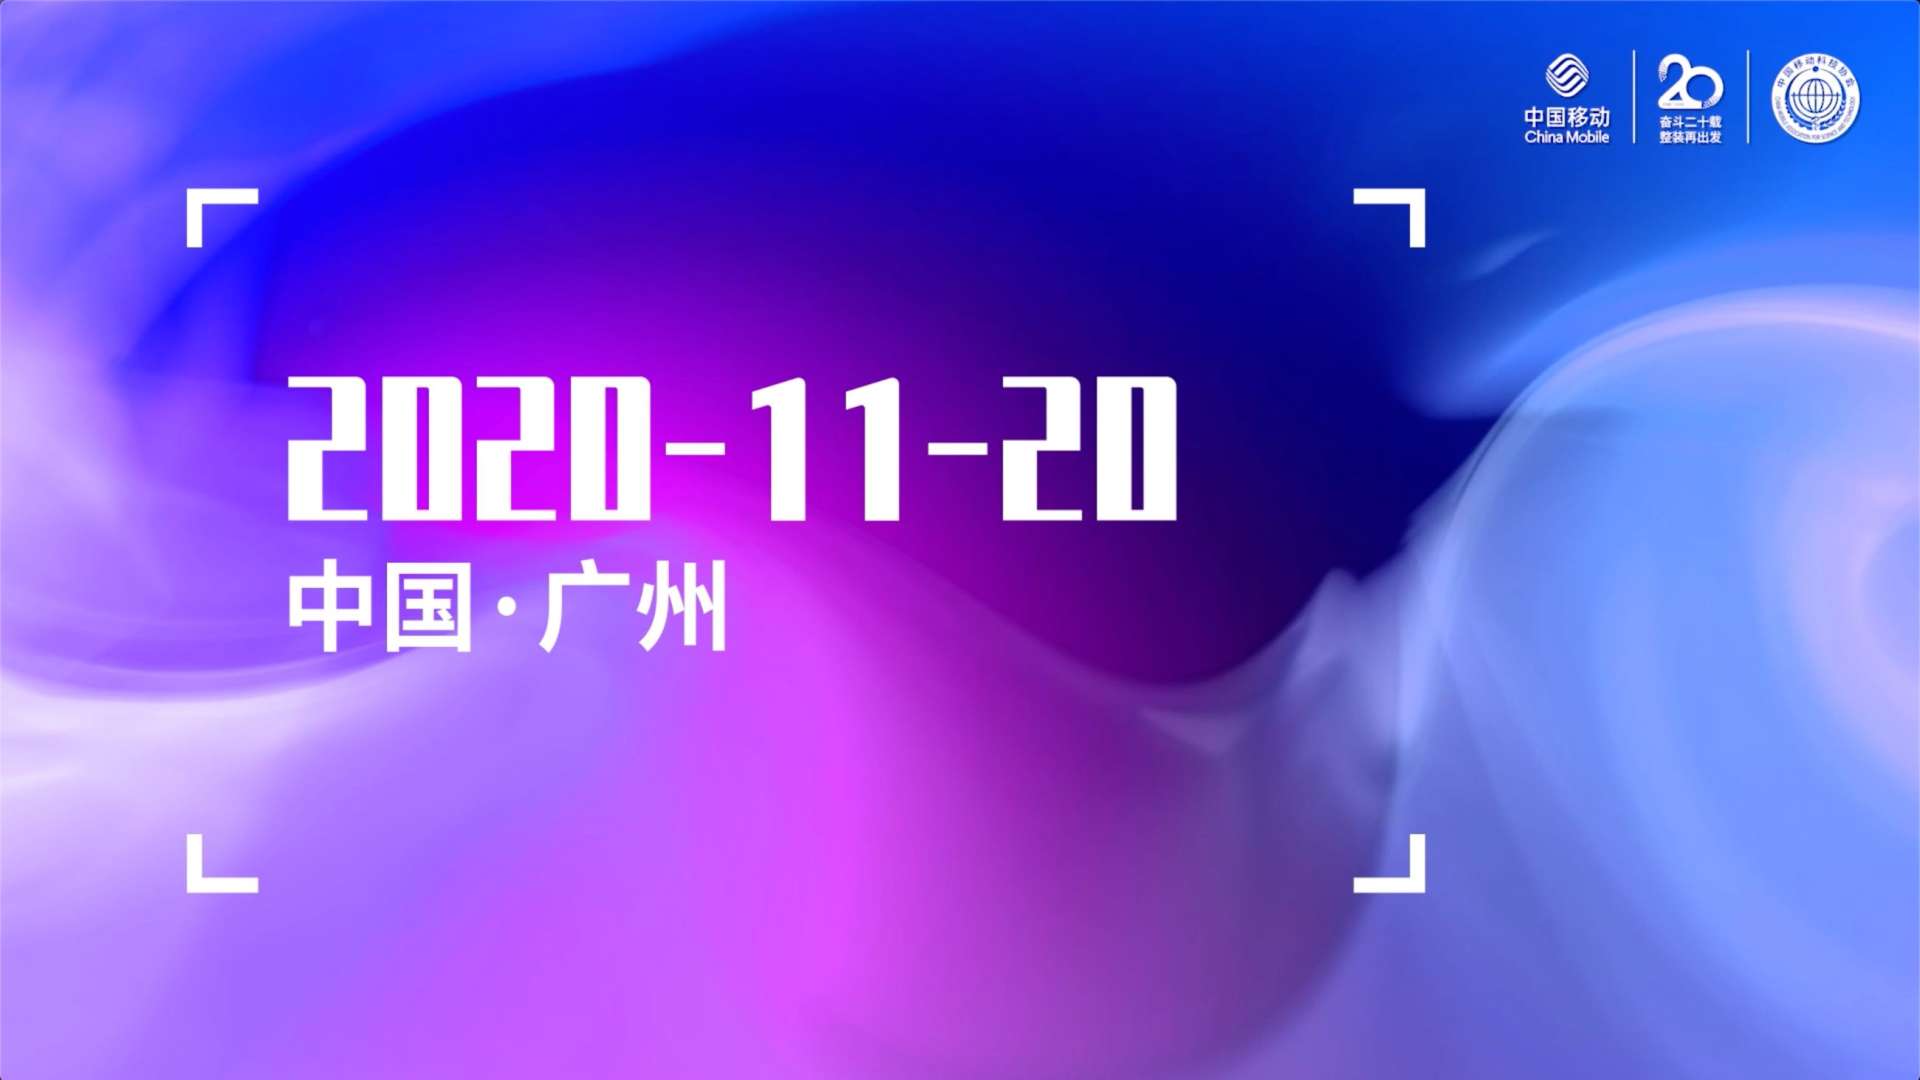 回顾视频｜中国移动“联创+ ”科技创新合作峰会